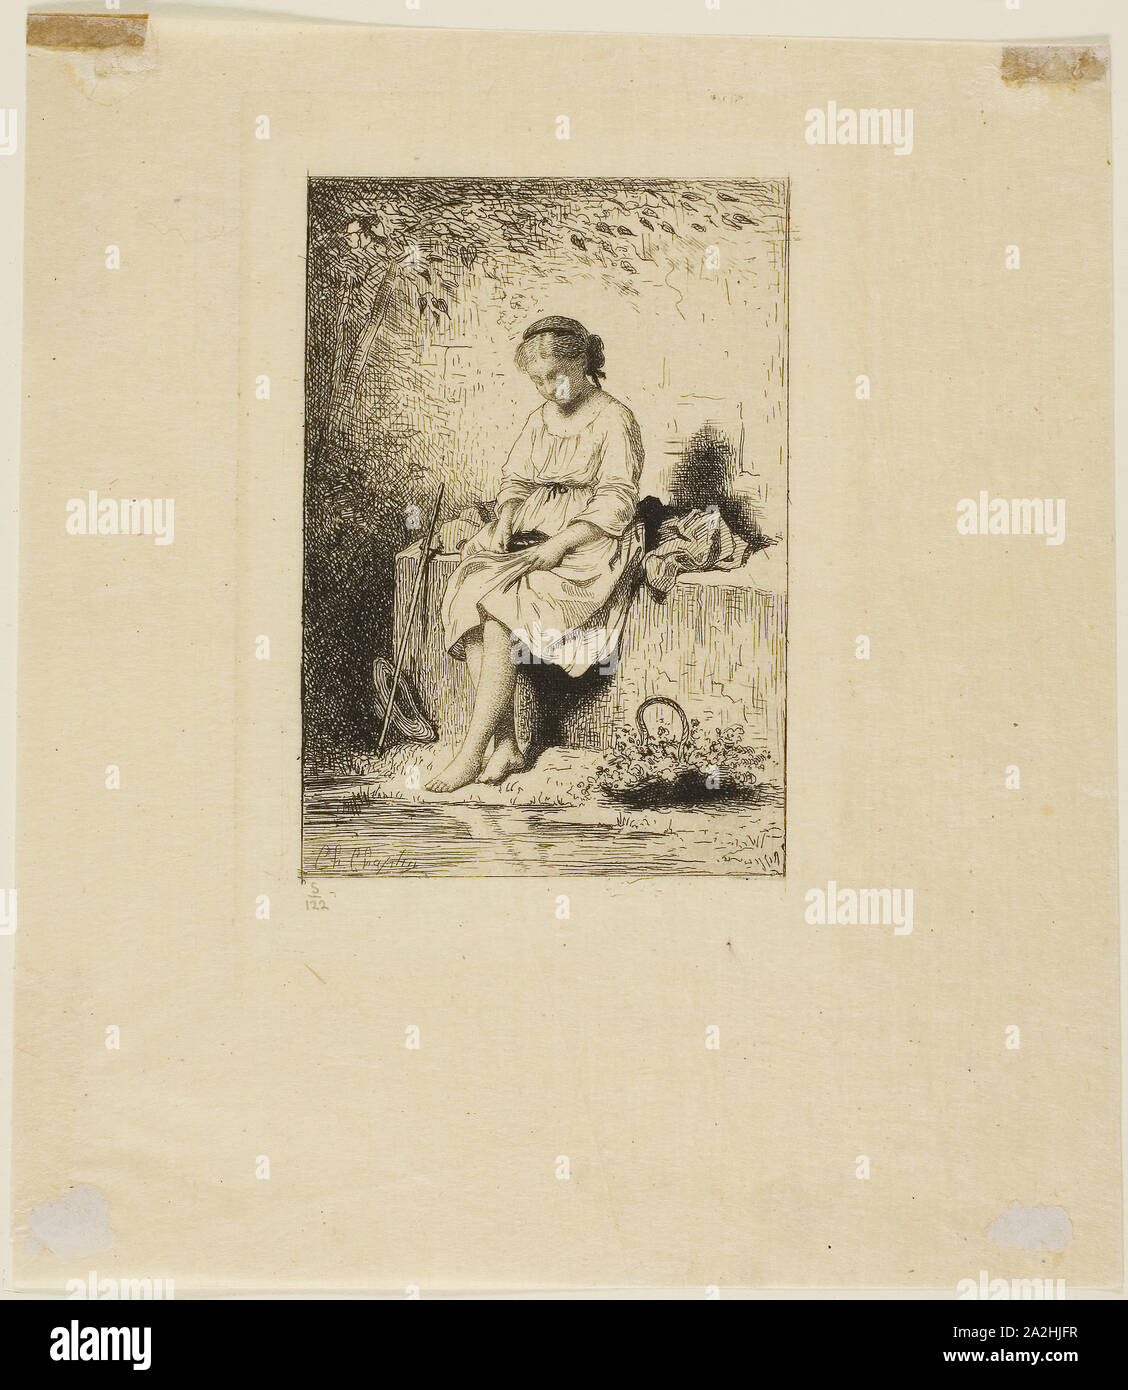 Le Nid d'oiseau et la petite fille, 1874, Charles Chaplin, Français, 1825-1891, France, Eau-forte sur papier Japon crème, 123 × 86 mm (image), 154 × 111 mm (plaque), 222 × 198 mm (feuille Banque D'Images